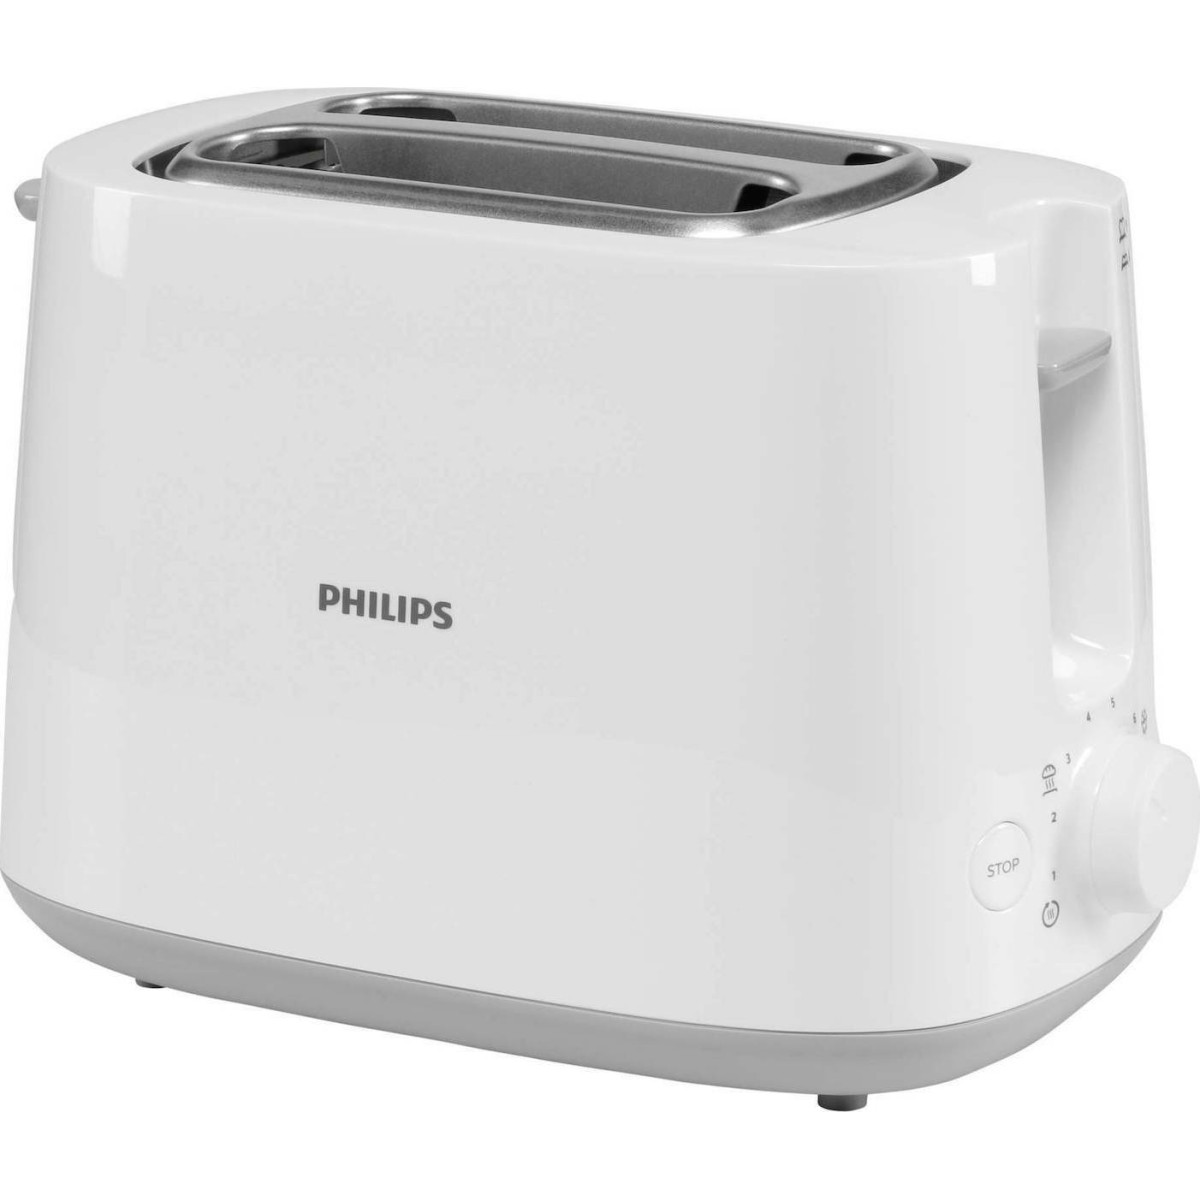 Φρυγανιέρα Philips HD2581/00 2 Θέσεων 830W Λευκή Φρυγανιέρες